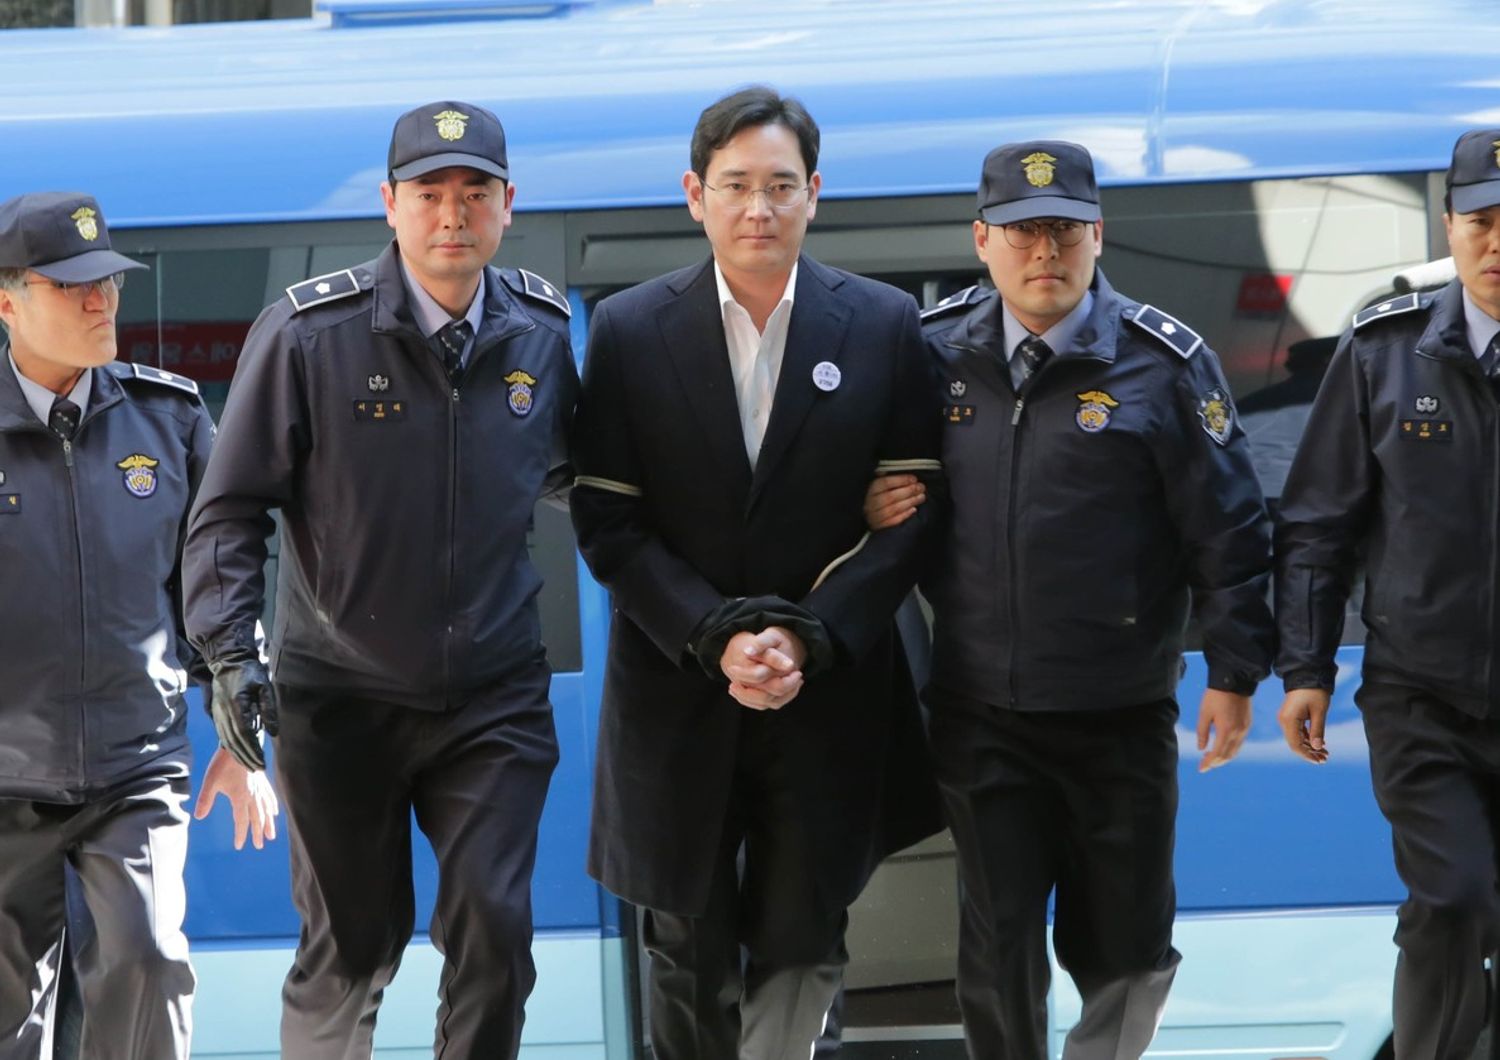 &nbsp;L'arresto di Lee Jae-Yong